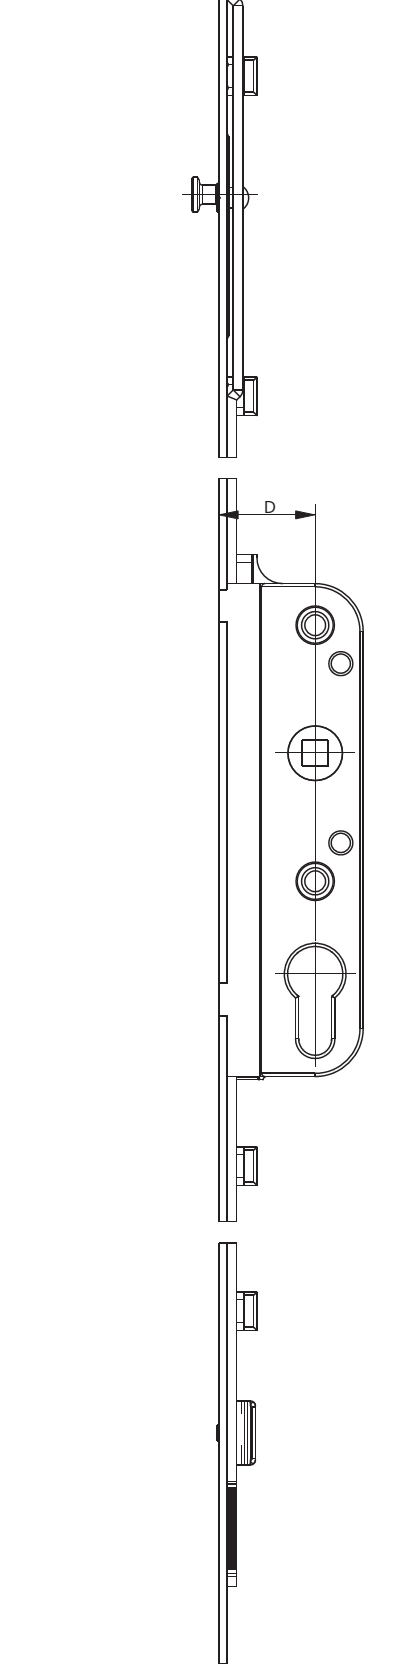 GU-ITALIA -  Cremonese GU-966 per complanare parallelo altezza maniglia fissa con foro cilindro - gr / dim. 1590 - entrata 50 - alt. man. 980 - lbb/hbb 1871 - 2120